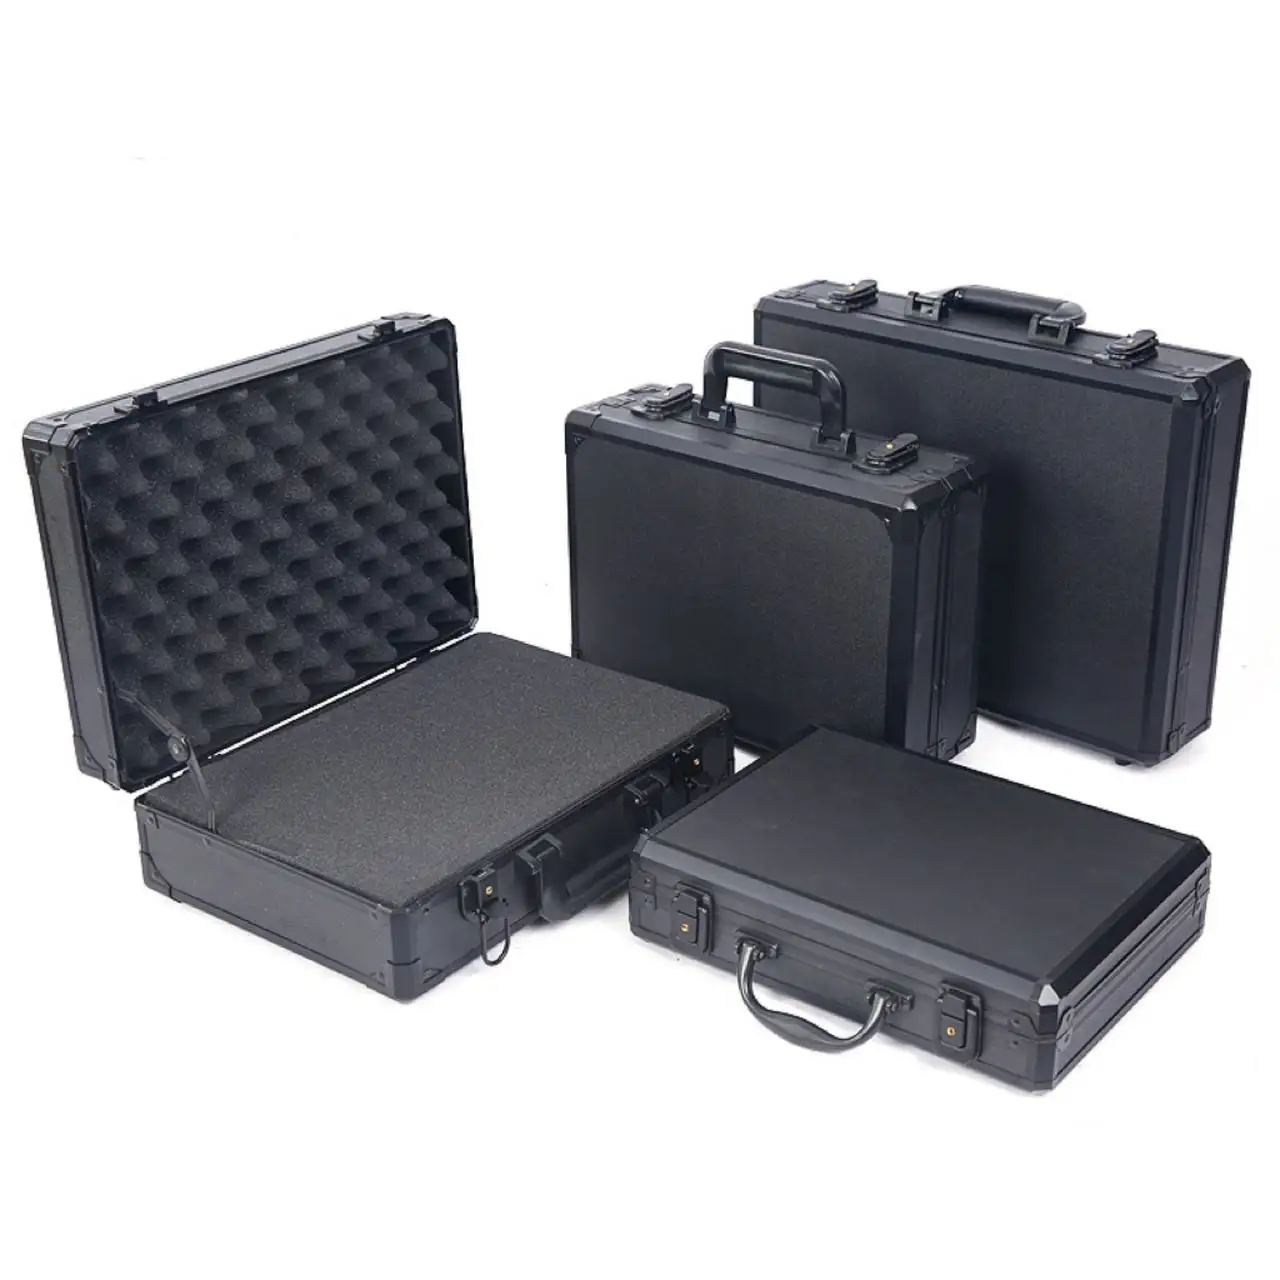 Flight Case in alluminio duro nero valigetta rigida in alluminio resistente valigetta in alluminio con dimensioni personalizzate e schiuma